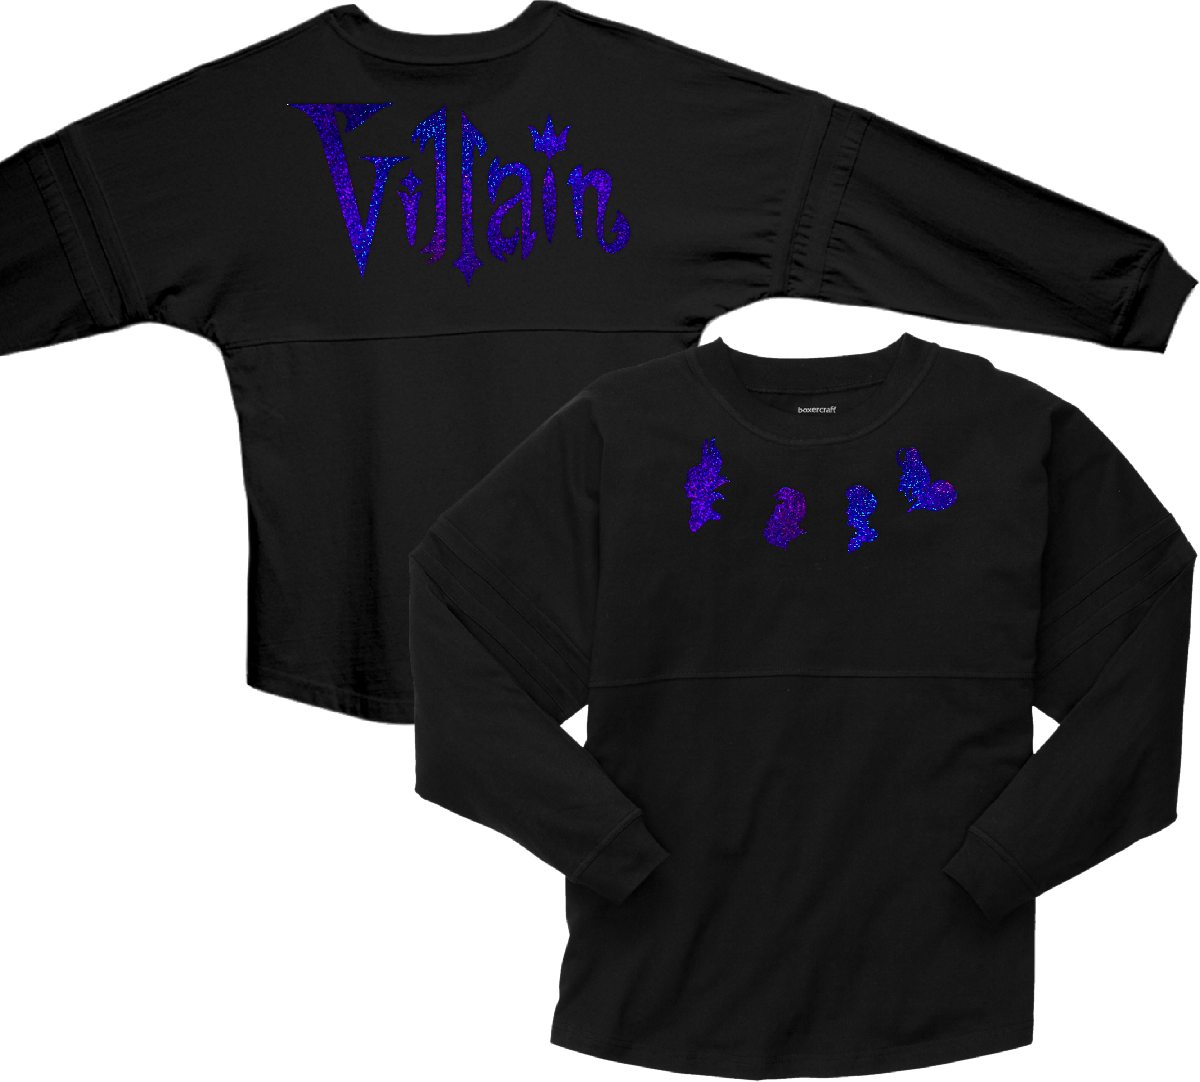 villains spirit jersey